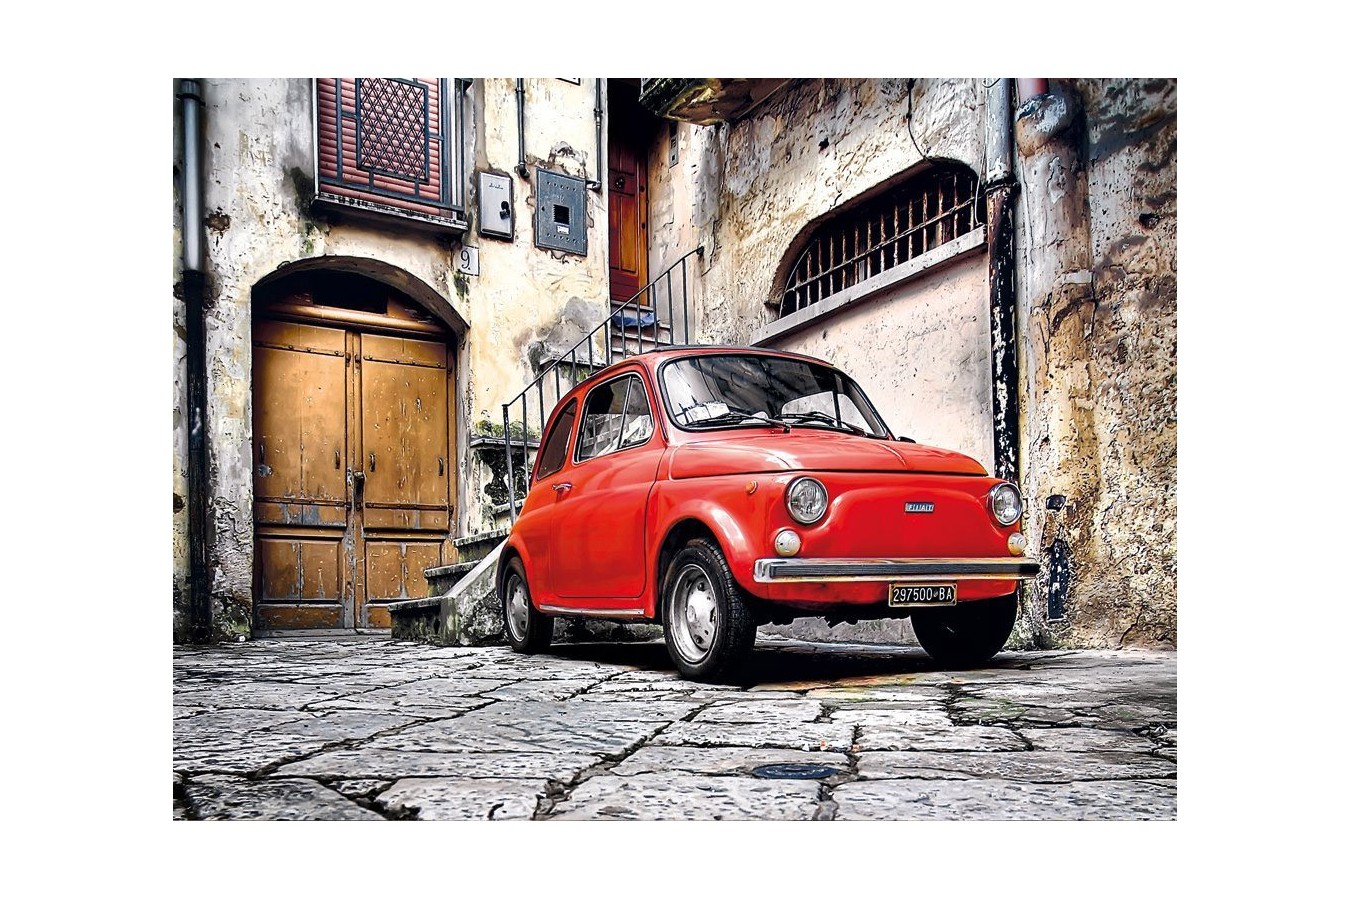 Puzzle Clementoni - Fiat 500, 500 piese (45339)